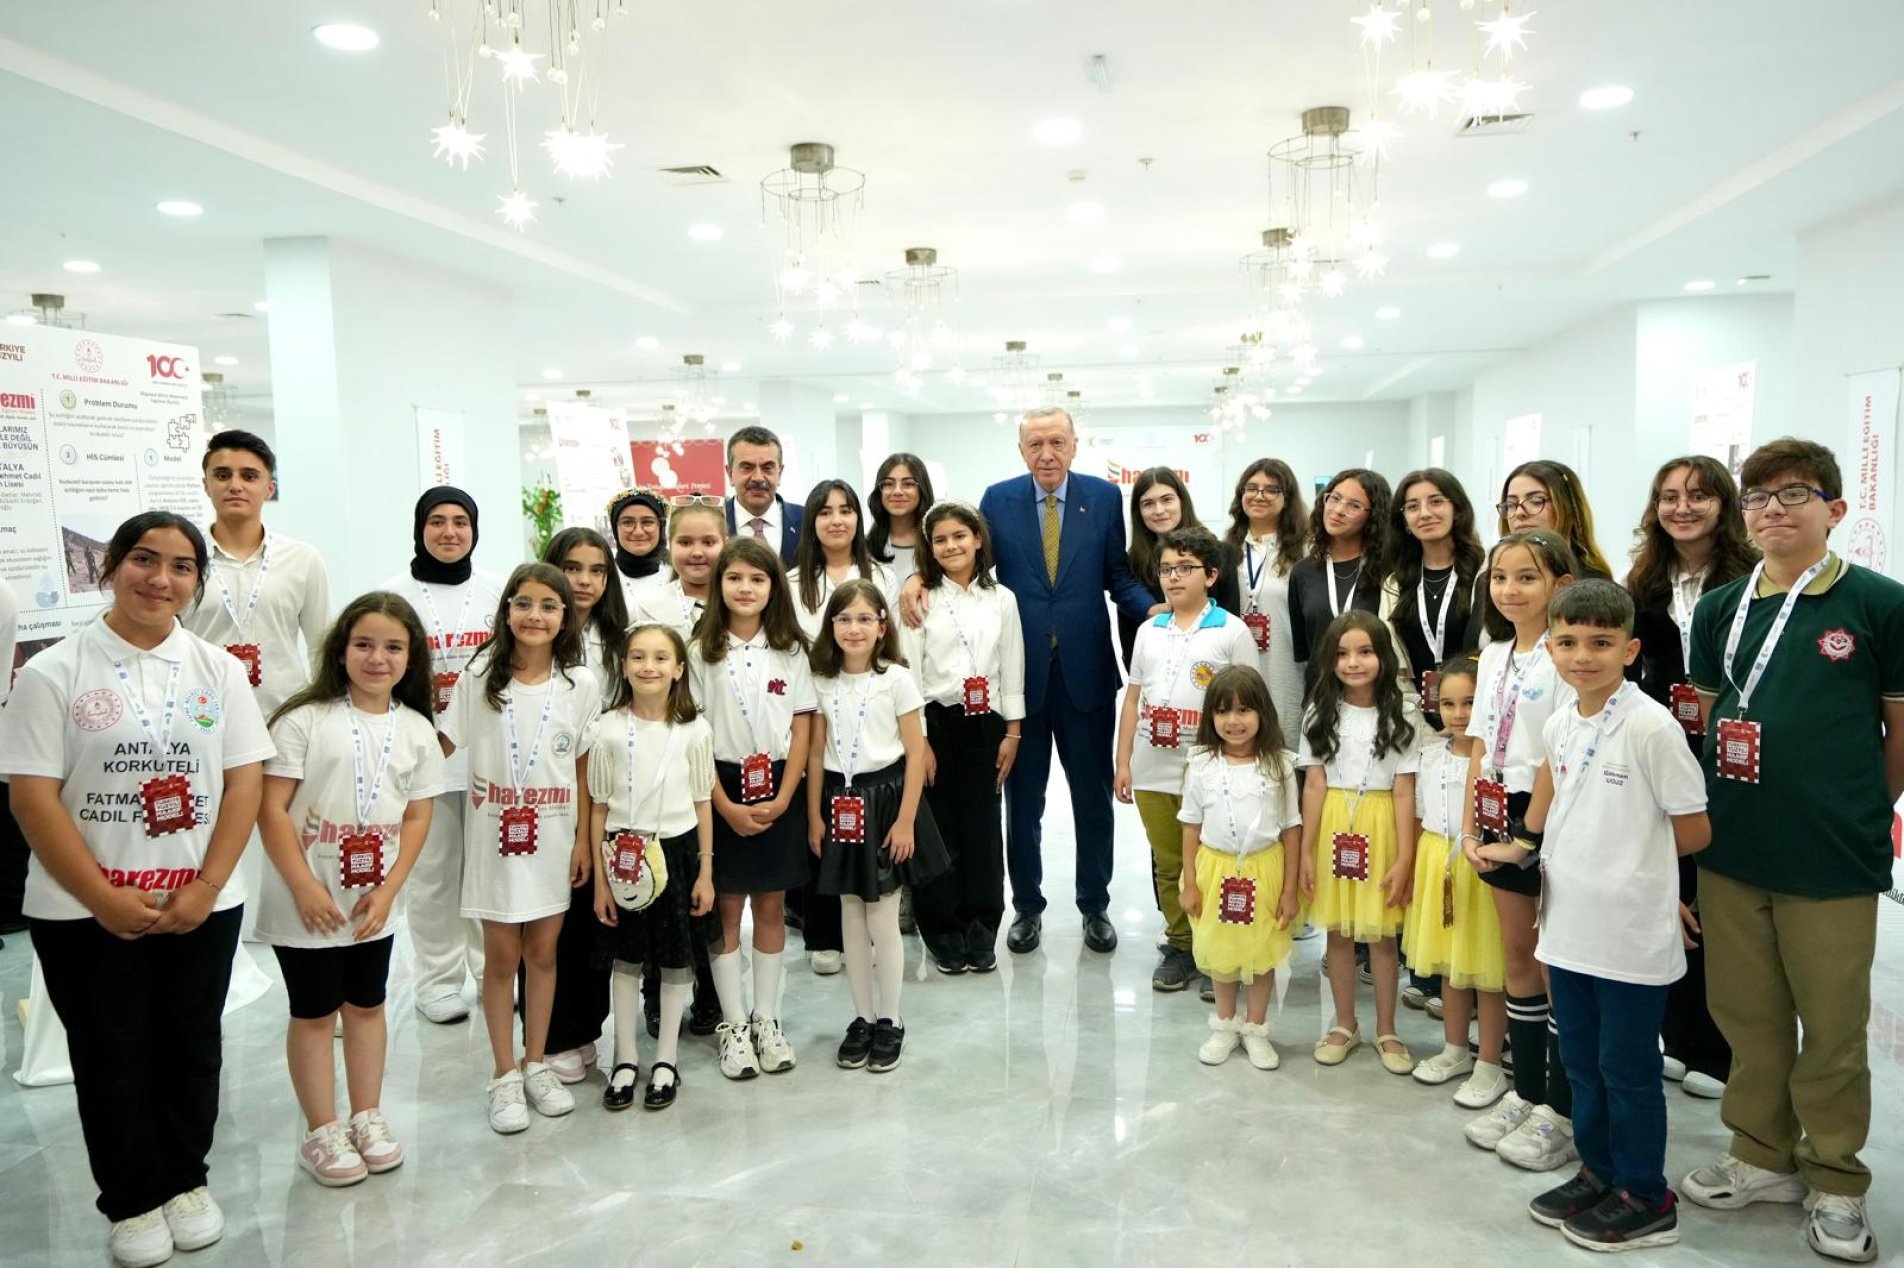 Demirkent Toki Ortaokulu “Türkiye Yüzyılı Maarif Modeli” tanıtım programına davet edildi